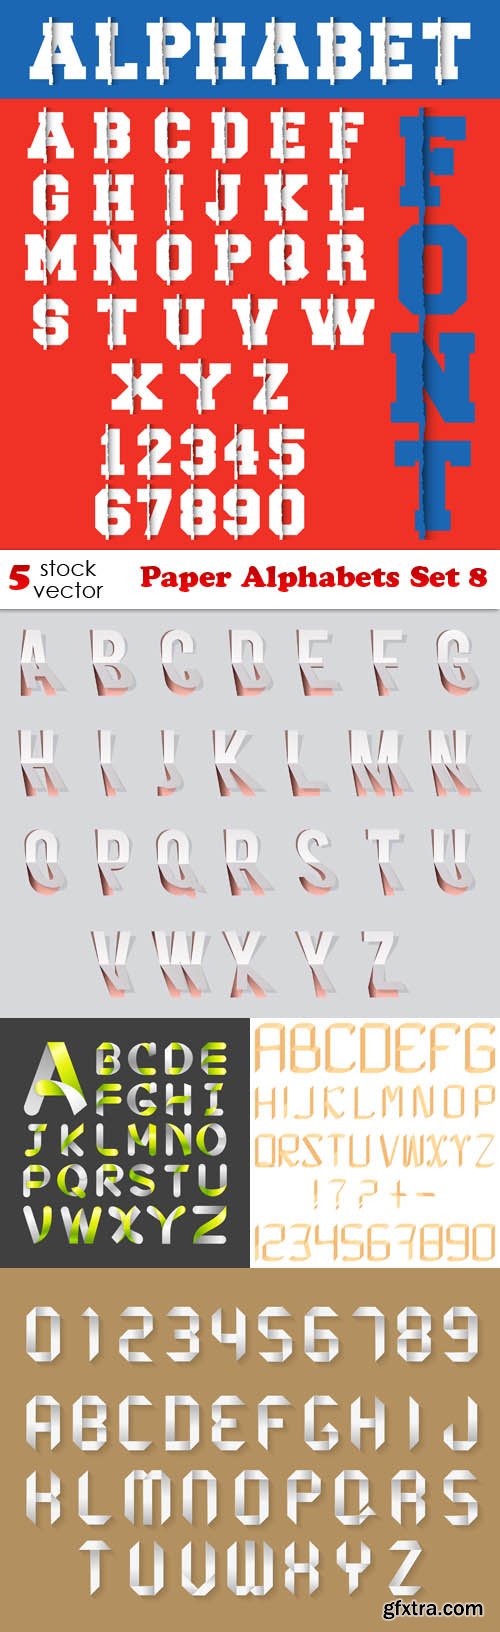 Vectors - Paper Alphabets Set 8